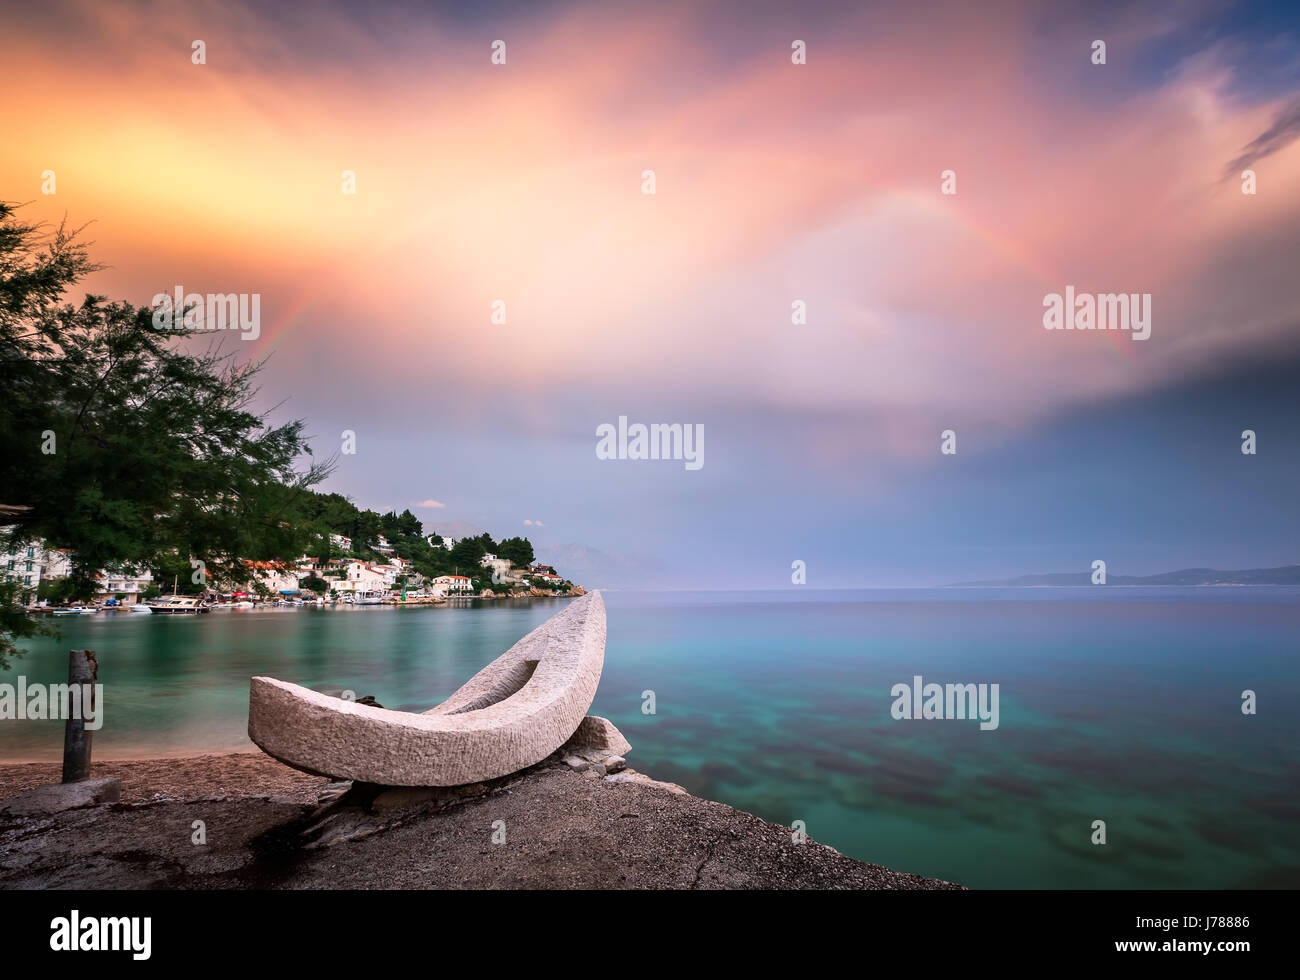 Rainbow over the White Stone Boat and Small Village in Omis Riviera, Dalmatia, Croatia Stock Photo